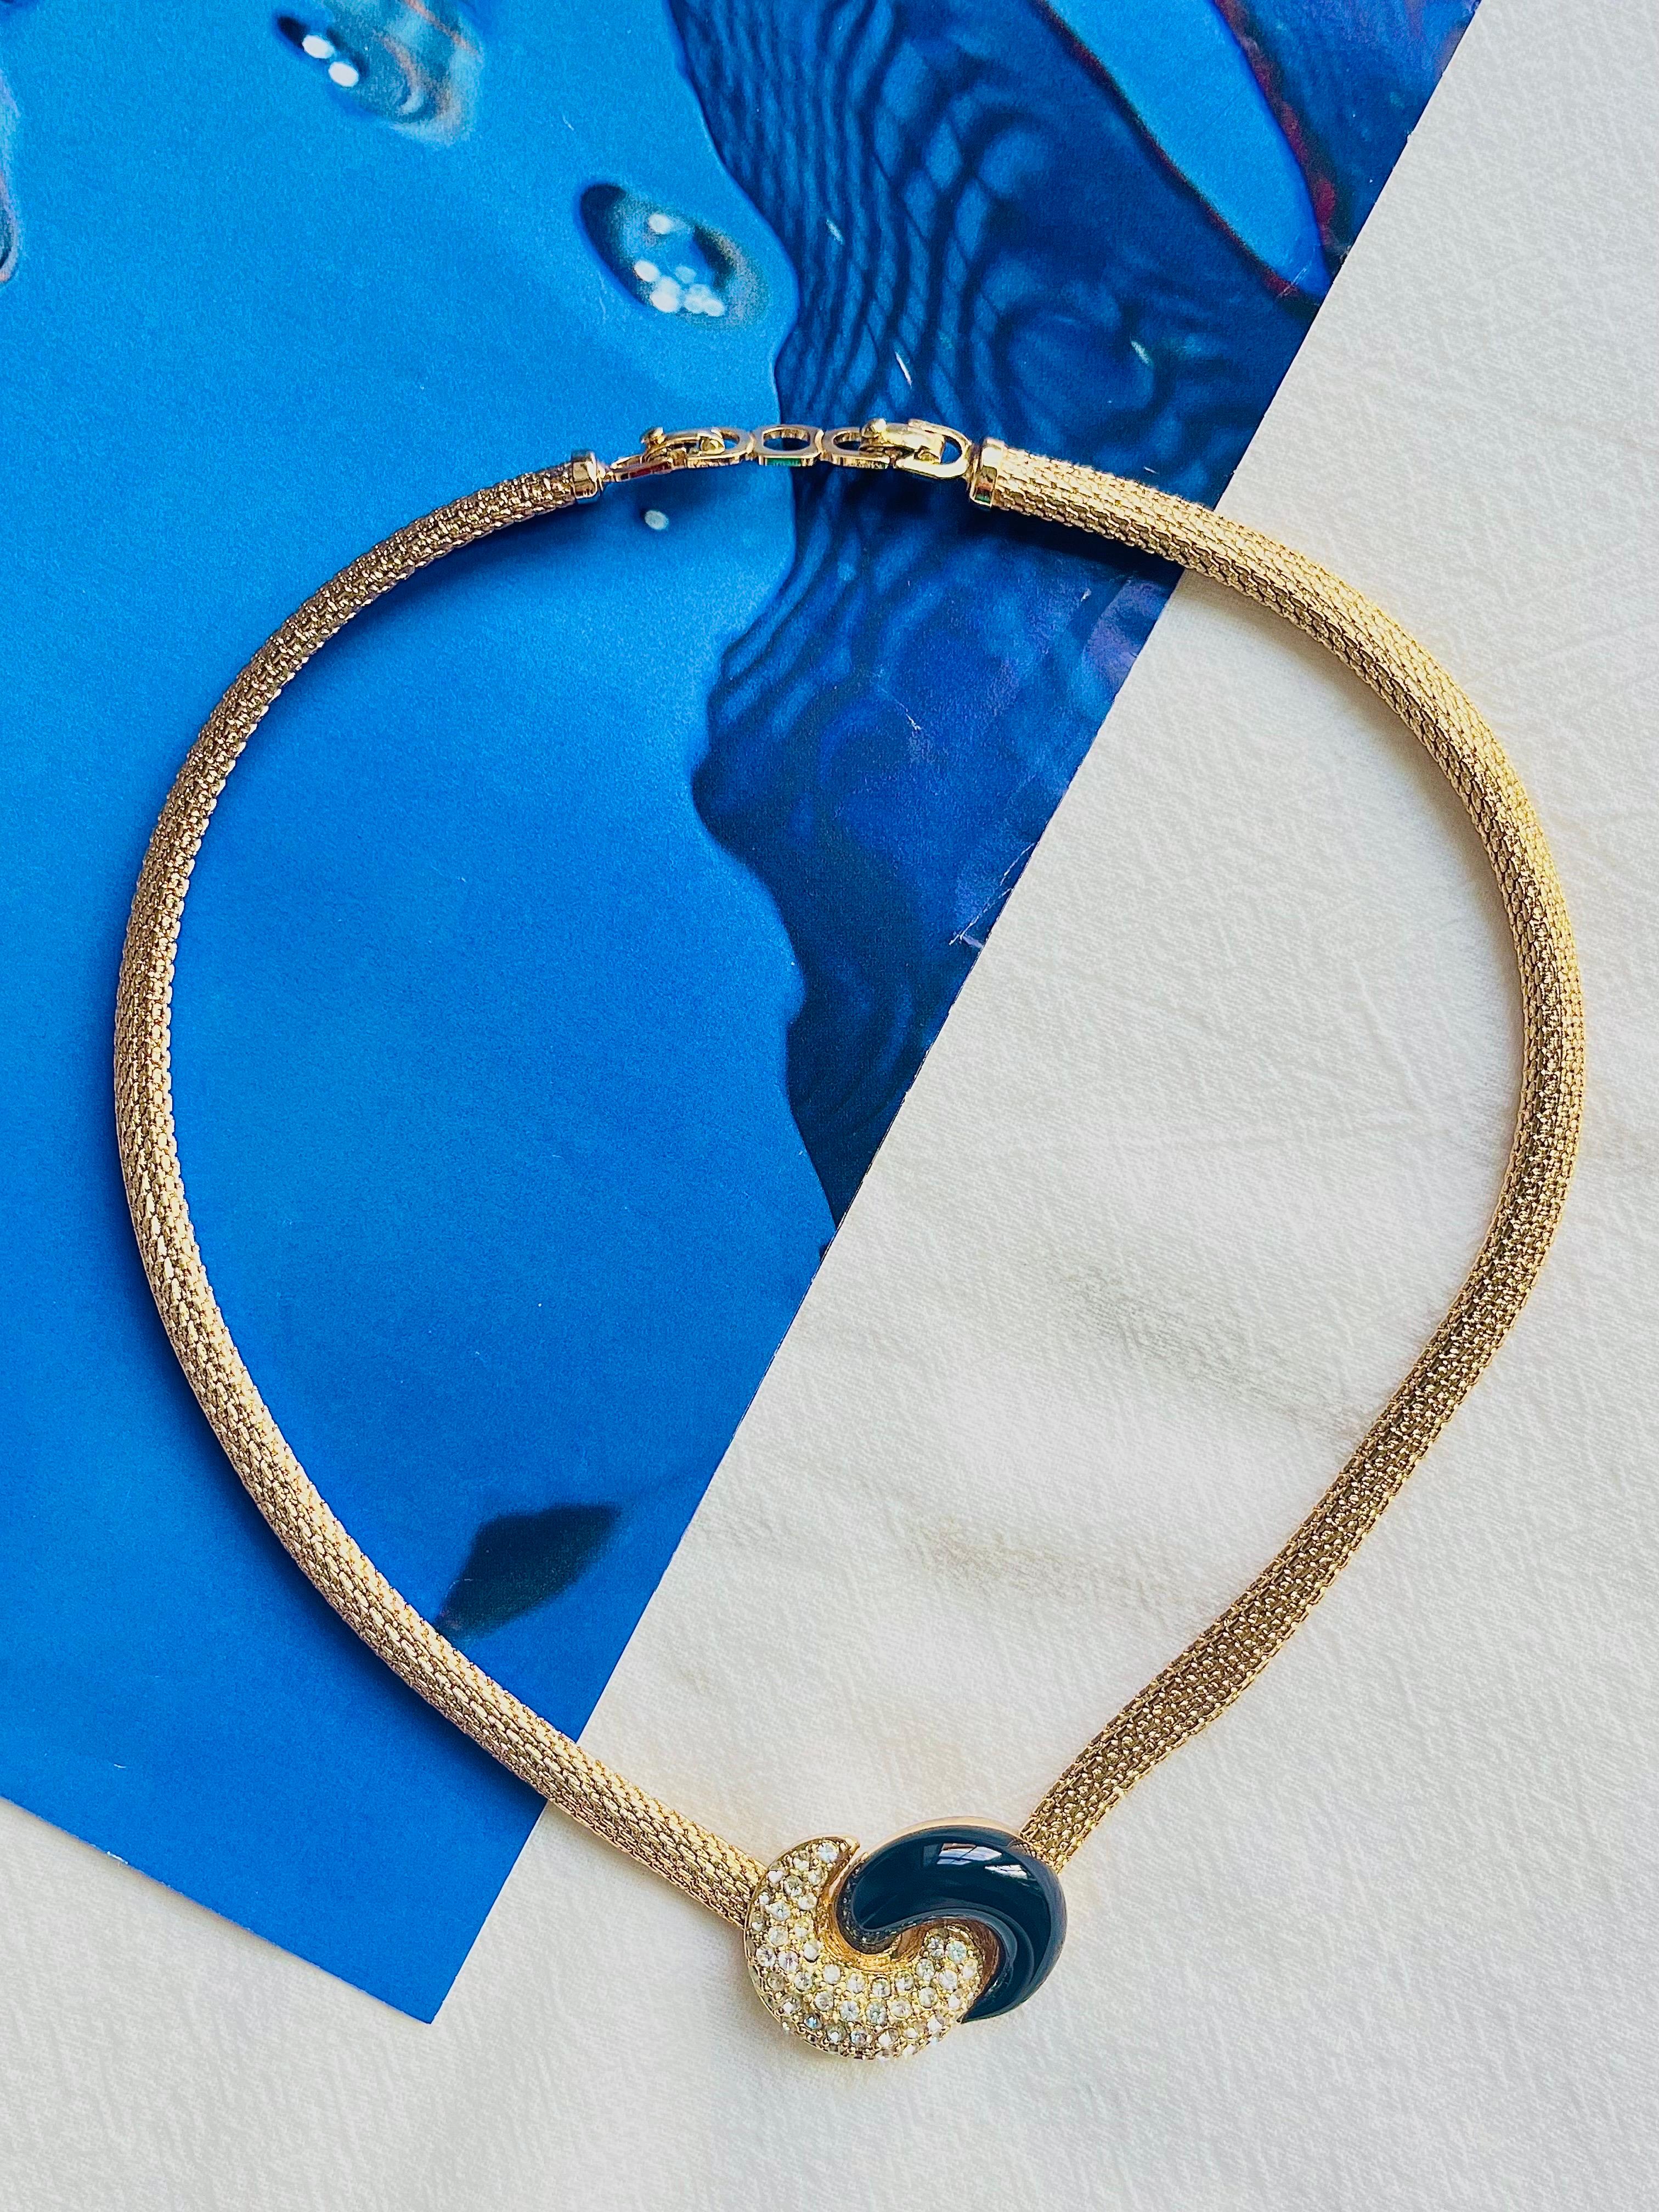 Christian Dior Vintage 1980s Black Enamel Crystals Knot Bow Pendant Mesh Neck Collier, Gold Tone

Très bon état. Légères rayures ou perte de couleur, à peine perceptibles. 100% authentique. 

Une pièce unique. Signé au dos. Rare à trouver.

Taille :